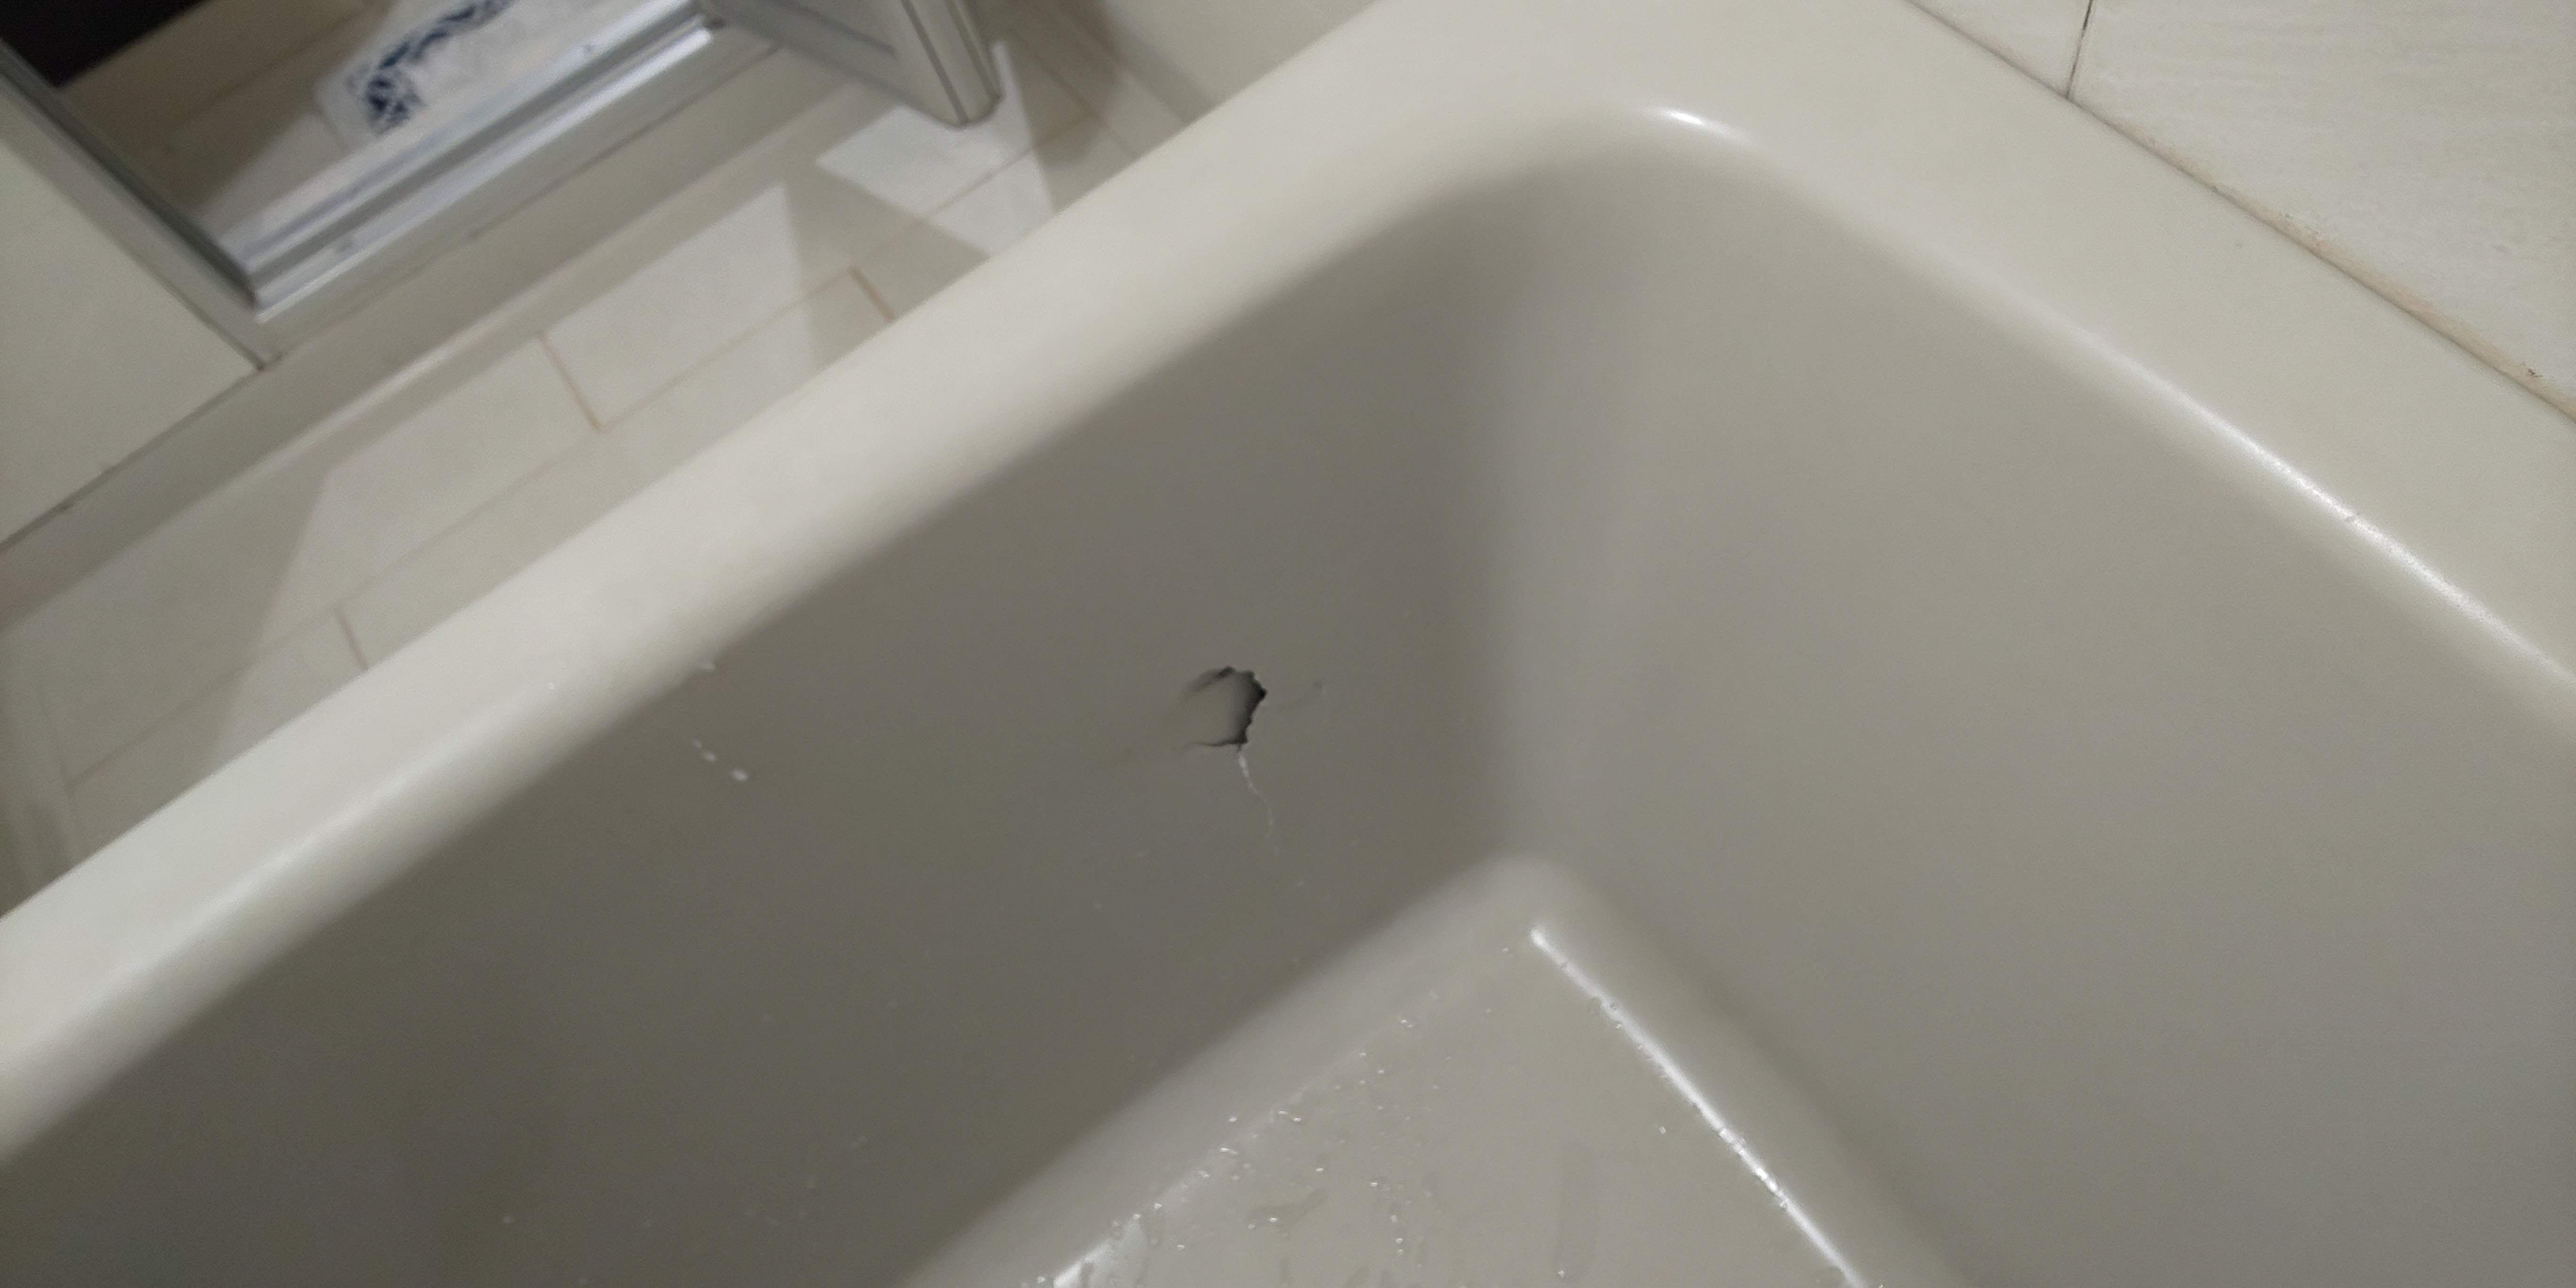 ある日 ともみち くん が お風呂から上がってきましたら、浴槽に穴が空いていました。(#ともみちくんテロ)